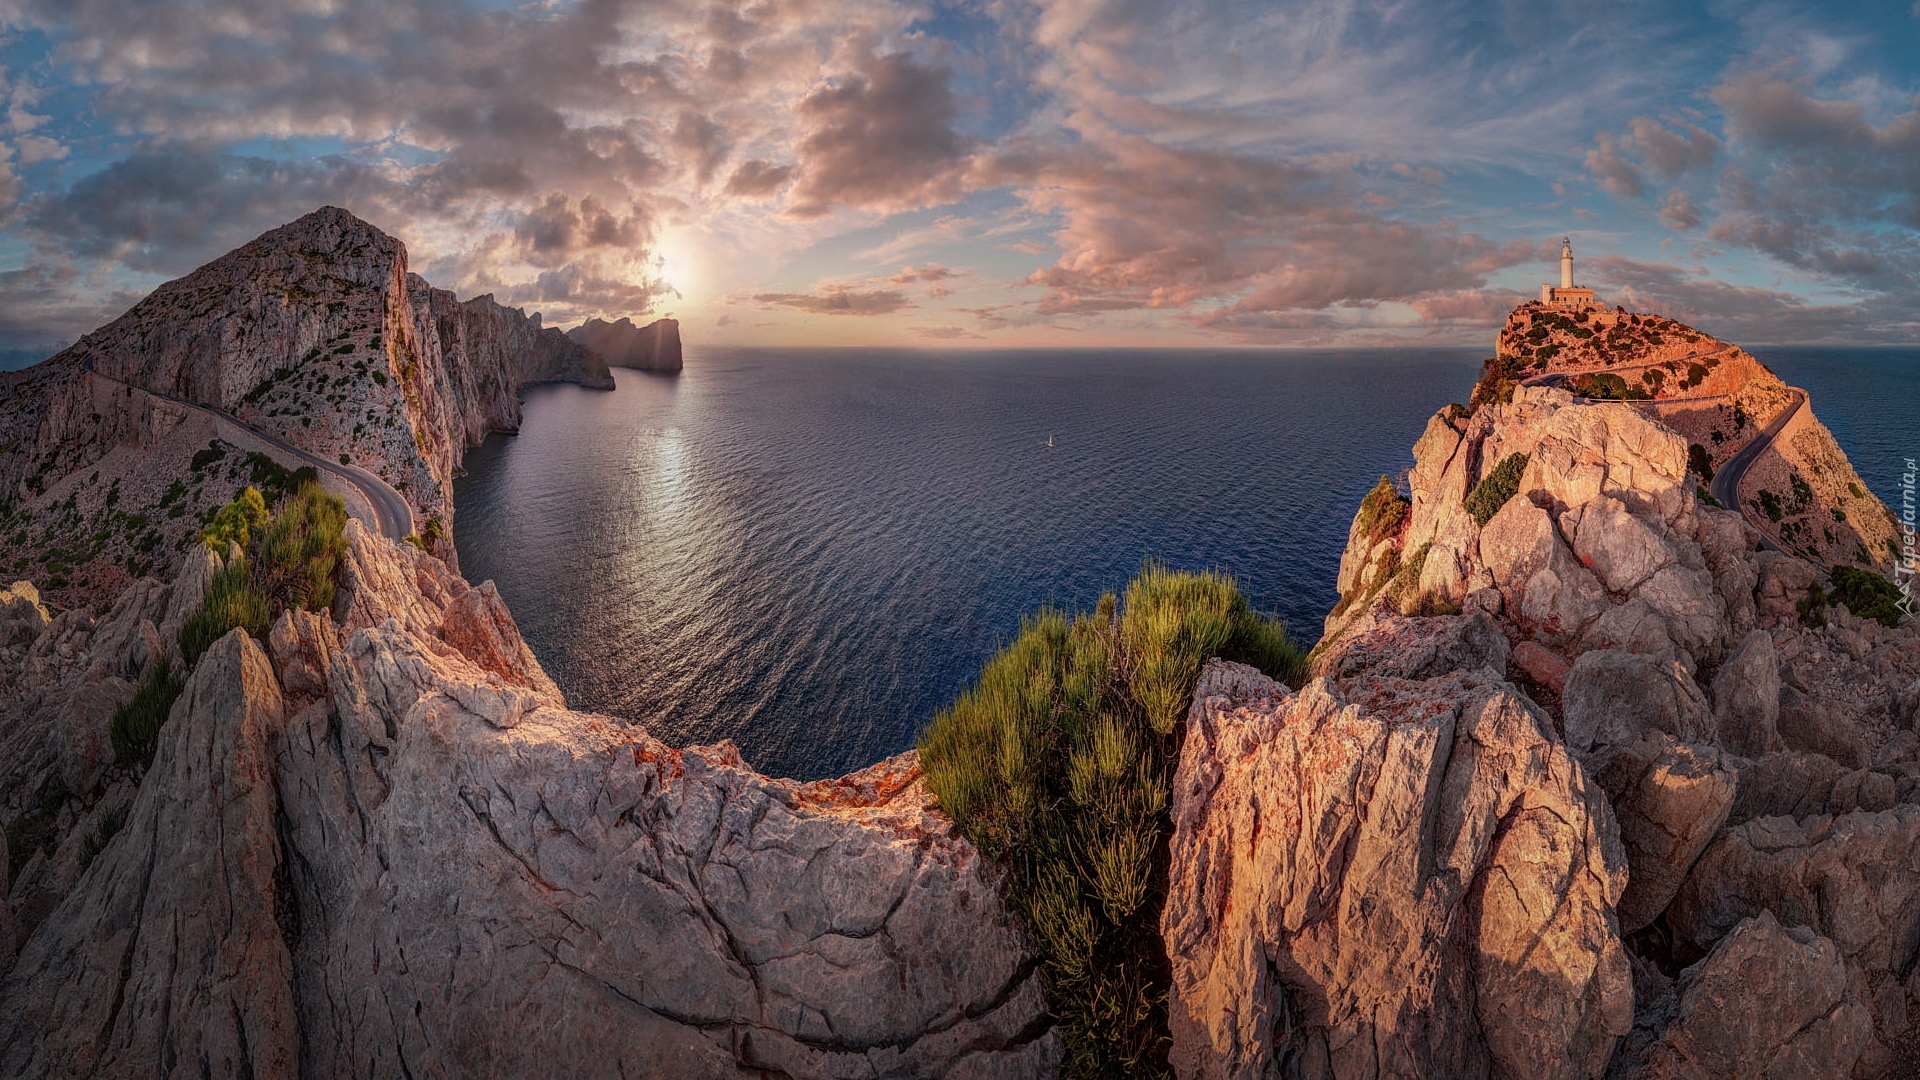 Przylądek Formentor, Wybrzeże, Góry Serra de Tramuntana, Morze Śródziemne, Skały, Latarnia morska, Zachód słońca, Wyspa Majorka, Hiszpania